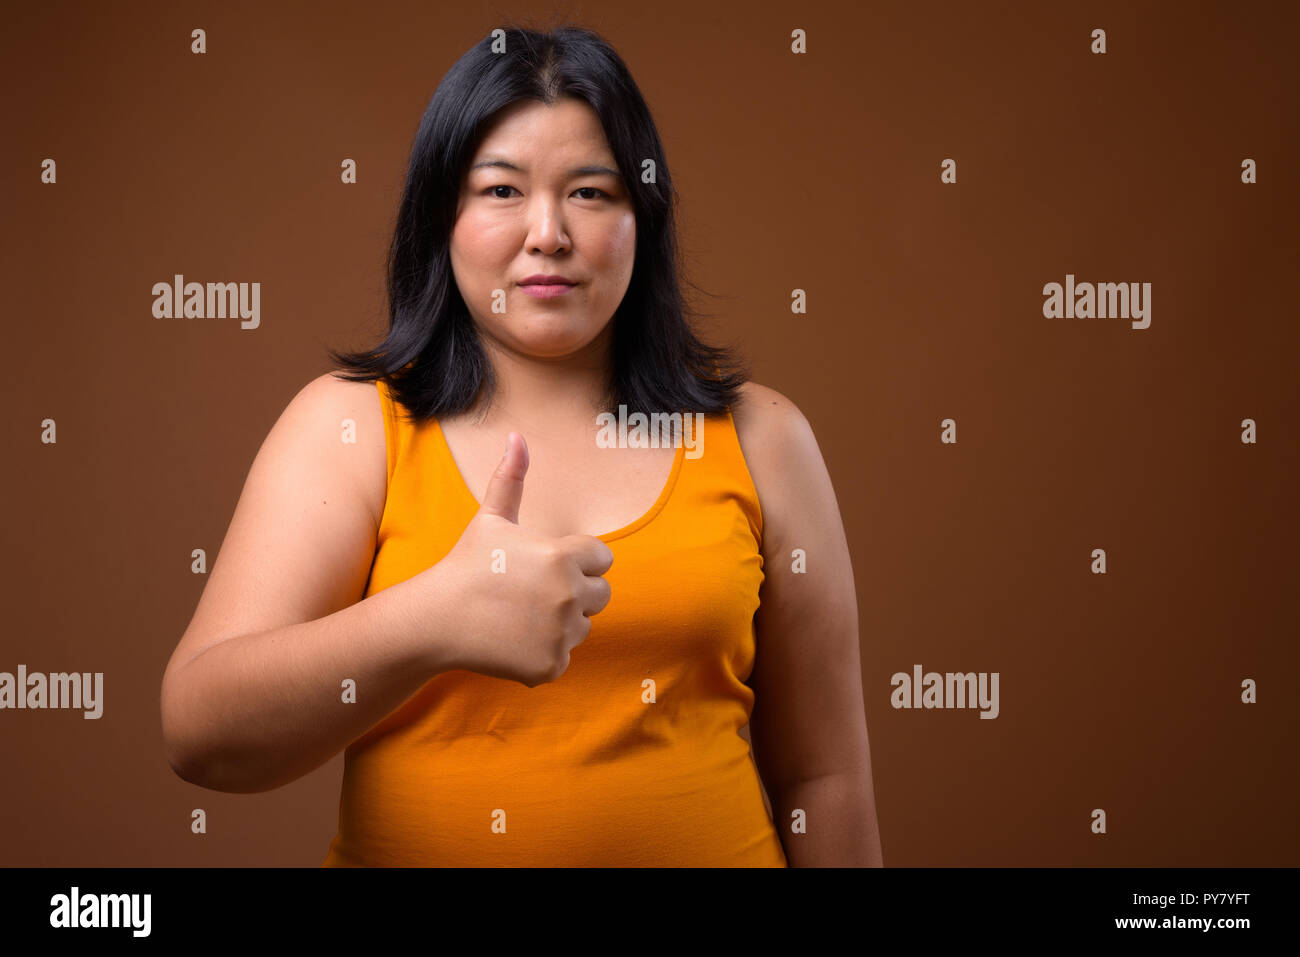 Bellissimo il sovrappeso donna asiatica dando pollice in alto Foto Stock